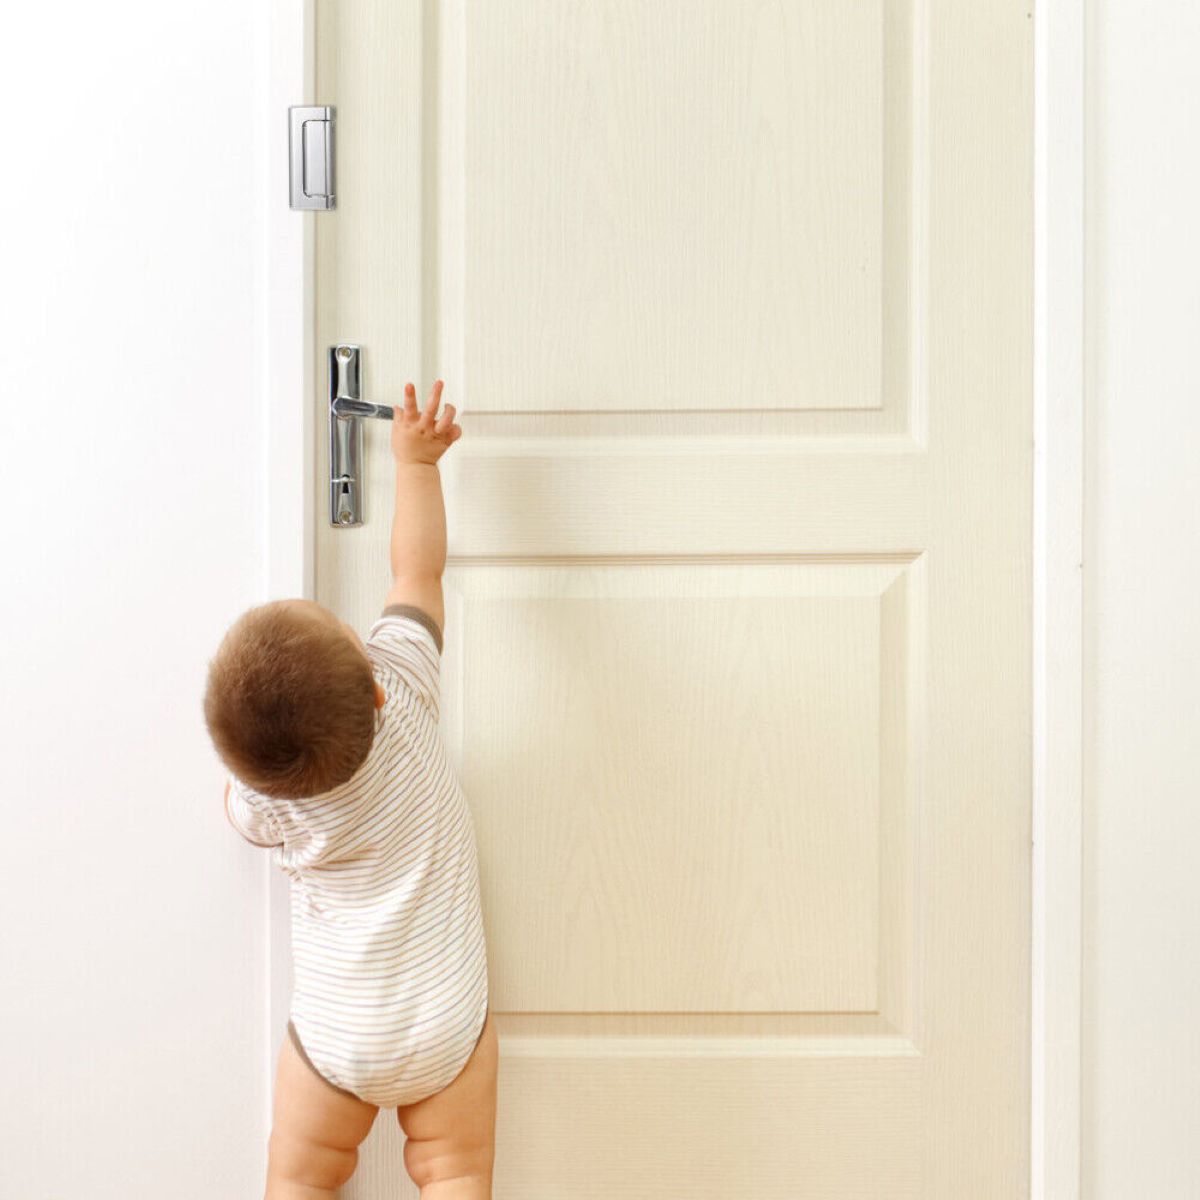 How To Childproof Your Front Door